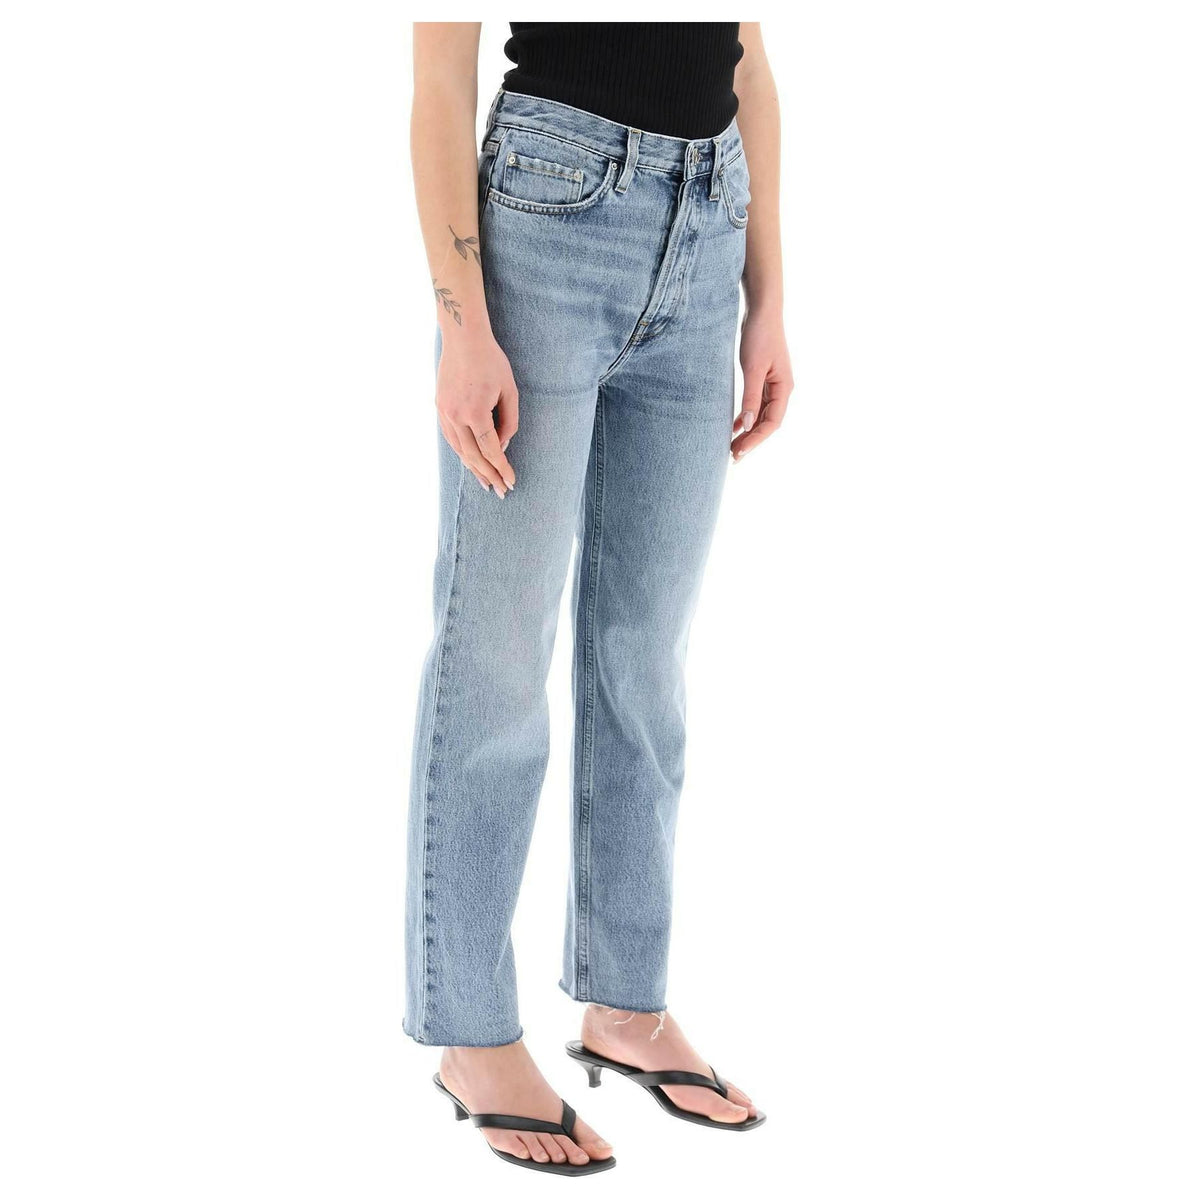 Toteme Classic Cut Jeans In Organic Cotton - JOHN JULIA